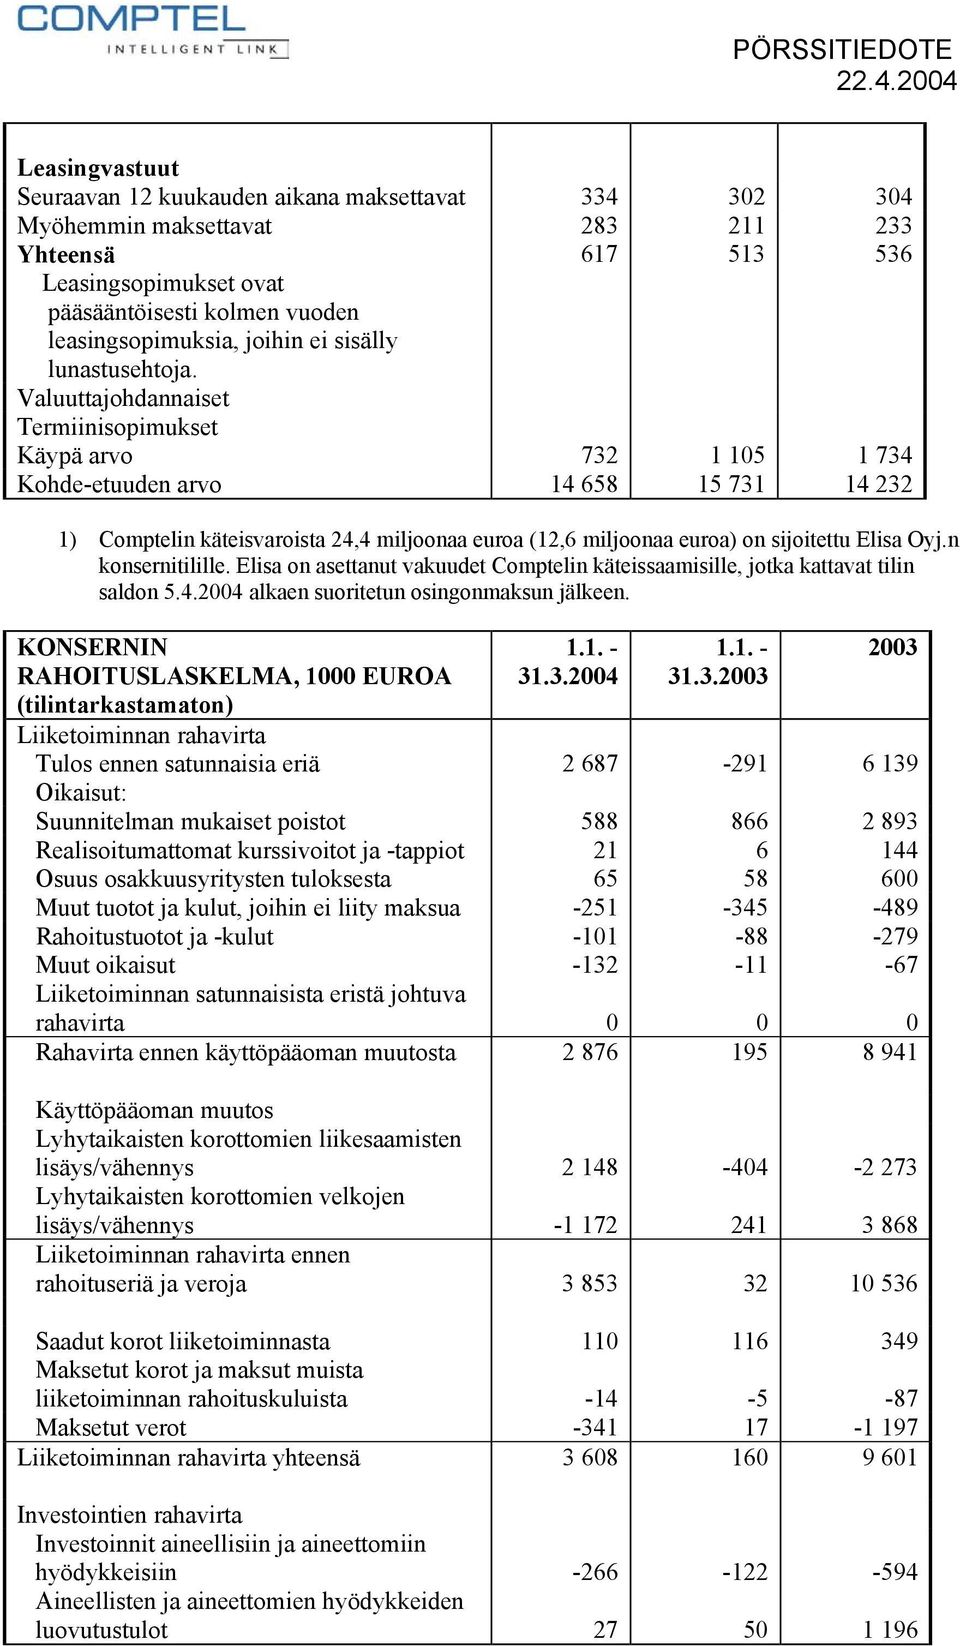 Valuuttajohdannaiset Termiinisopimukset Käypä arvo 732 1 105 1 734 Kohde-etuuden arvo 14 658 15 731 14 232 1) Comptelin käteisvaroista 24,4 miljoonaa euroa (12,6 miljoonaa euroa) on sijoitettu Elisa